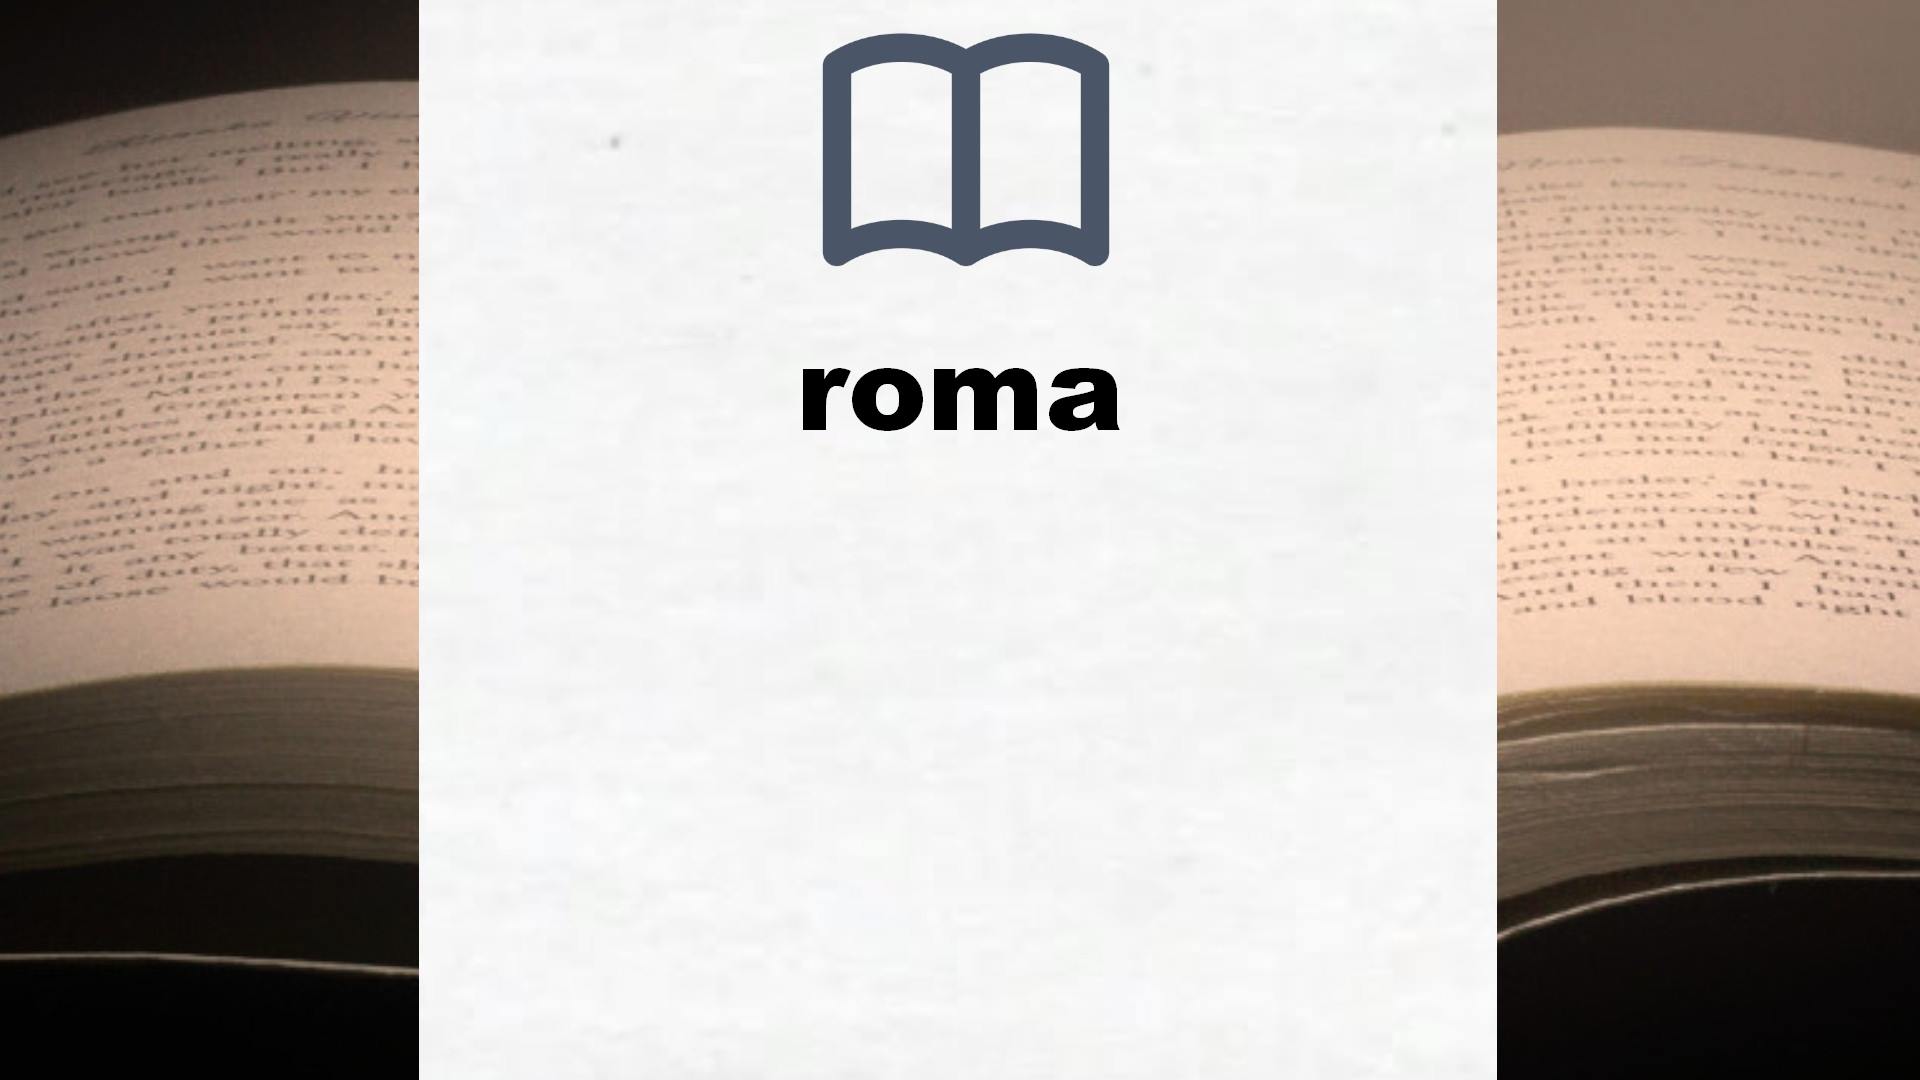 Libros sobre roma